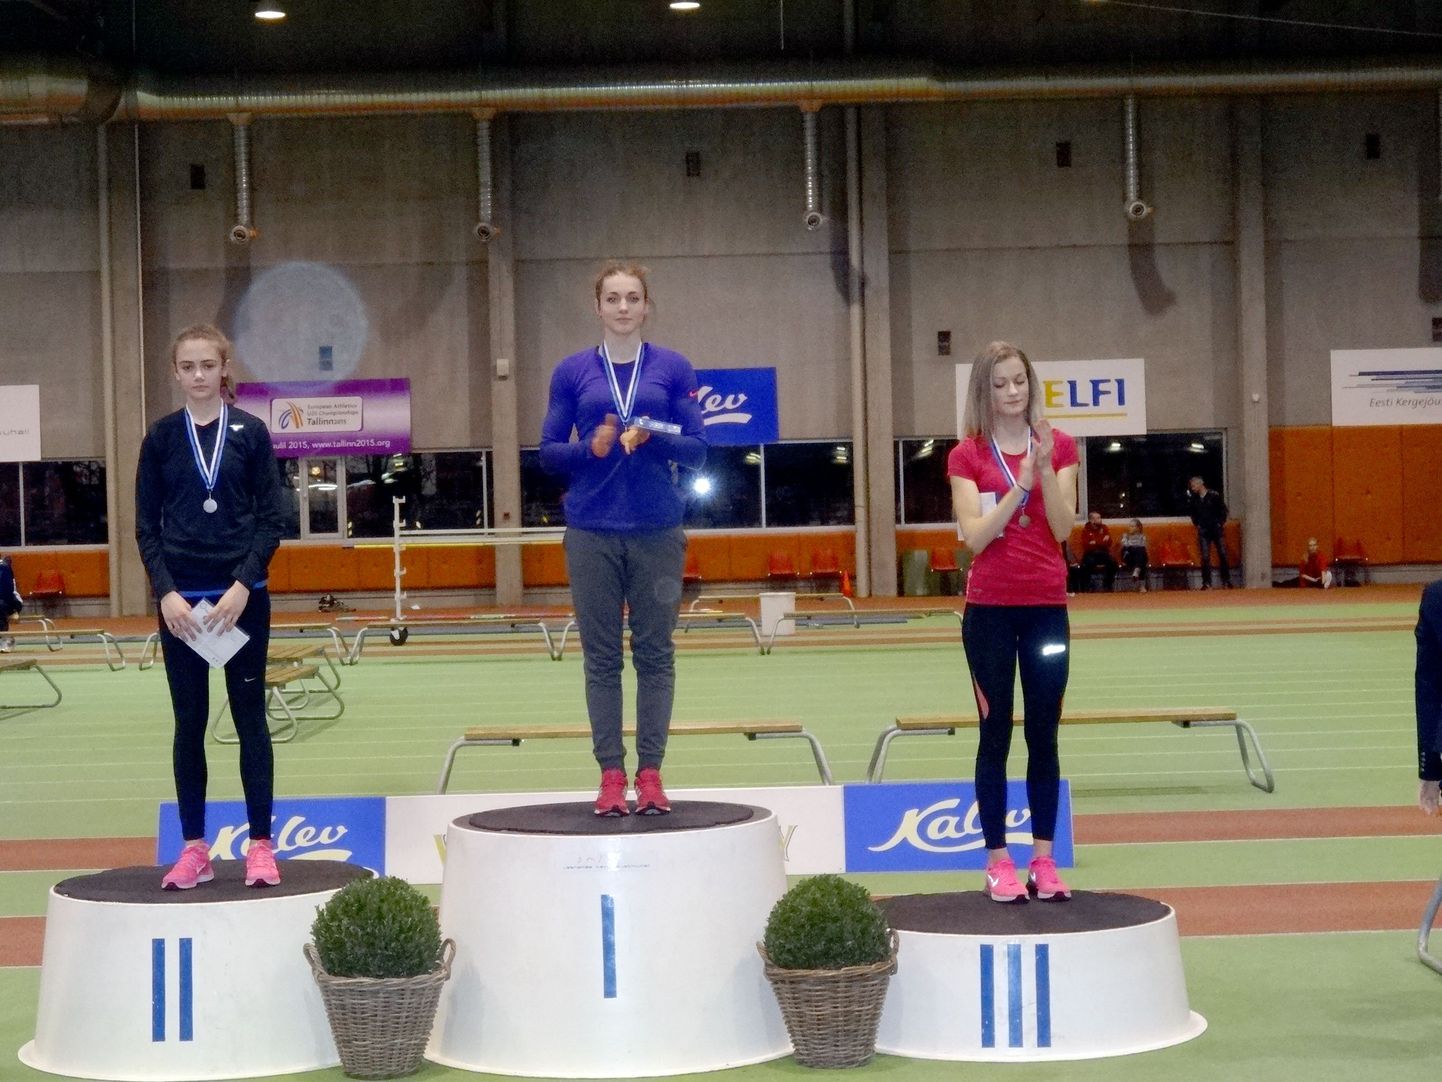 Tüdrukute A-vanuseklassi 300 meetri jooksu autasustamisel tõusis Anna Sidorenko pjedestaali teisele astmele. Võitjale kaotas ta vaid kaheksa sajandikku ajaga 41,44.